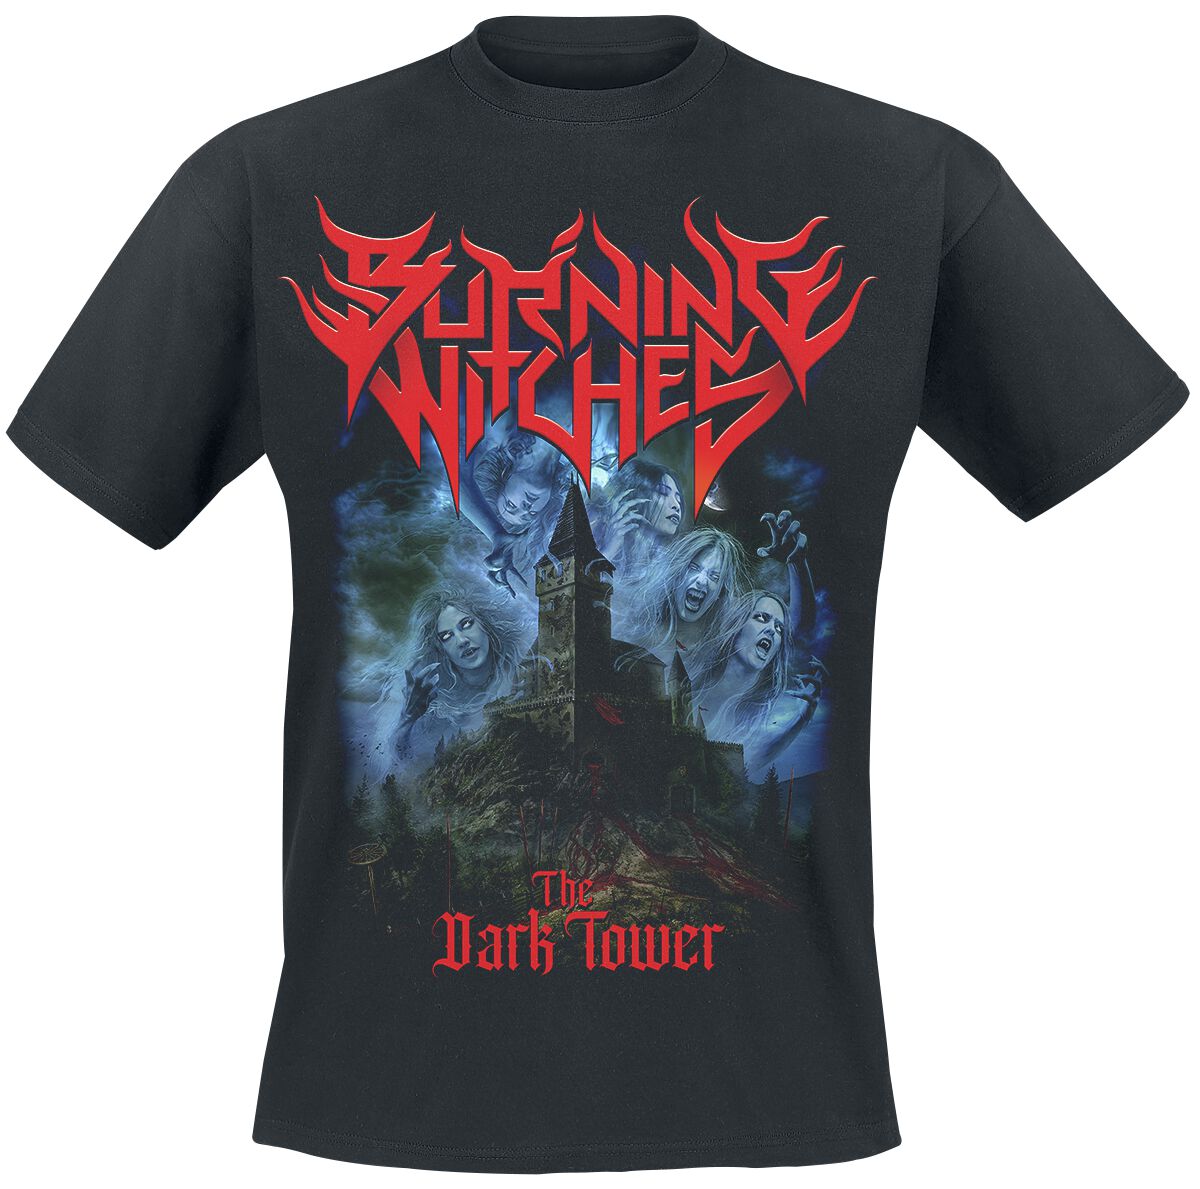 Burning Witches T-Shirt - The Dark Tower - S bis 4XL - für Männer - Größe 4XL - schwarz  - Lizenziertes Merchandise!